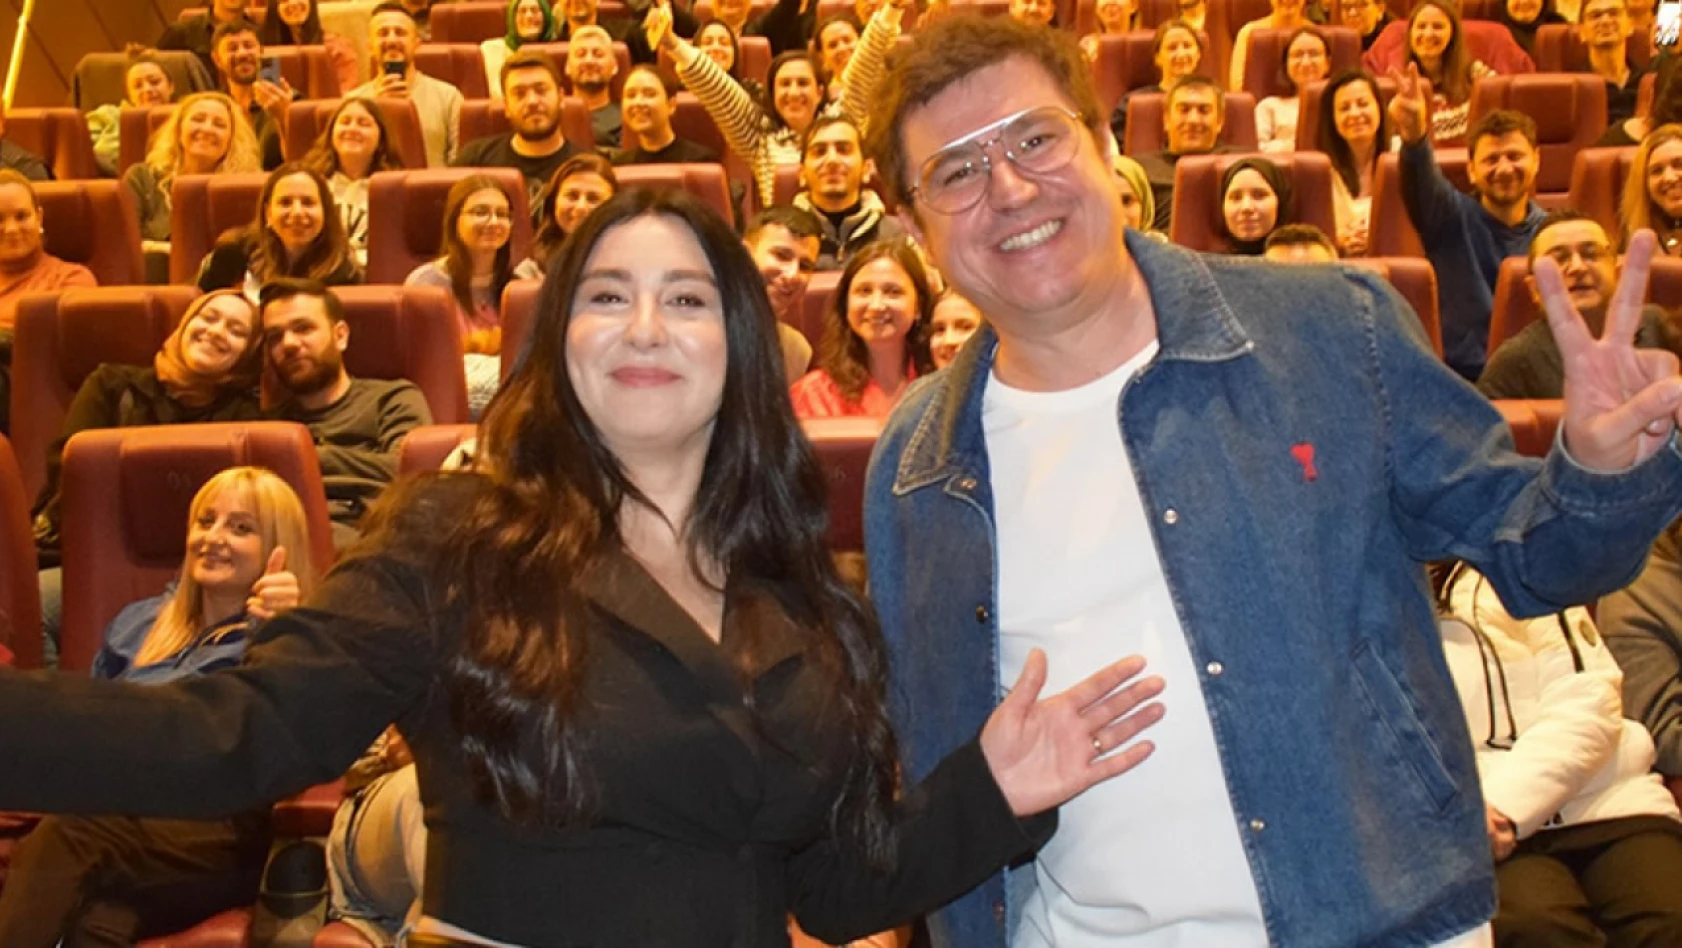 İbrahim Büyükak ve Yasemin Sakallıoğlu, 'Mutluyuz' filmi ile Türkiye turnesine devam ediyor